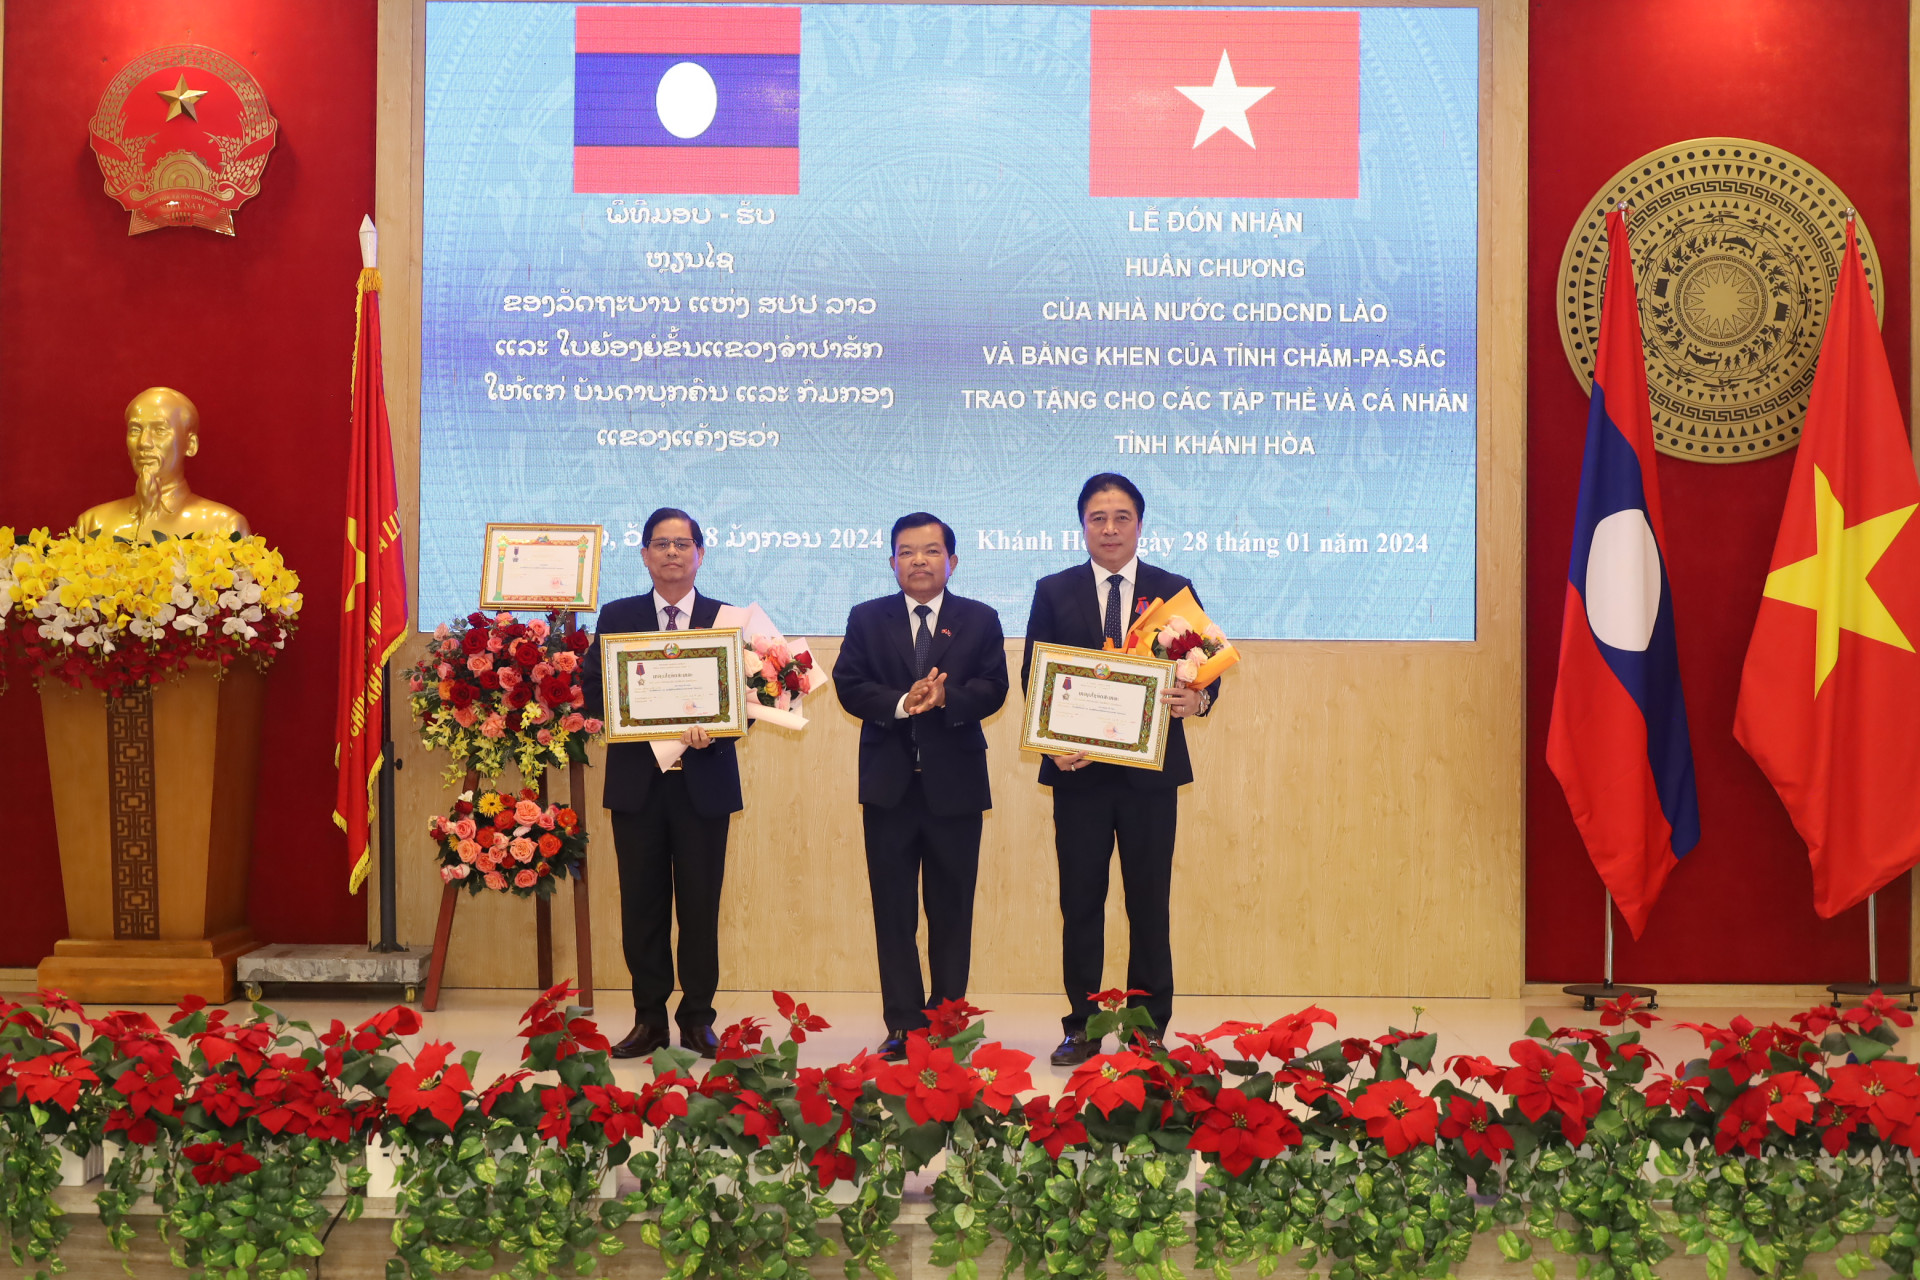 Đồng chí Nguyễn Khắc Toàn và đồng chí Nguyễn Tấn Tuân đón nhận Huân chương Itxala hạng III do Chủ tịch nước CHDCND Lào tặng.